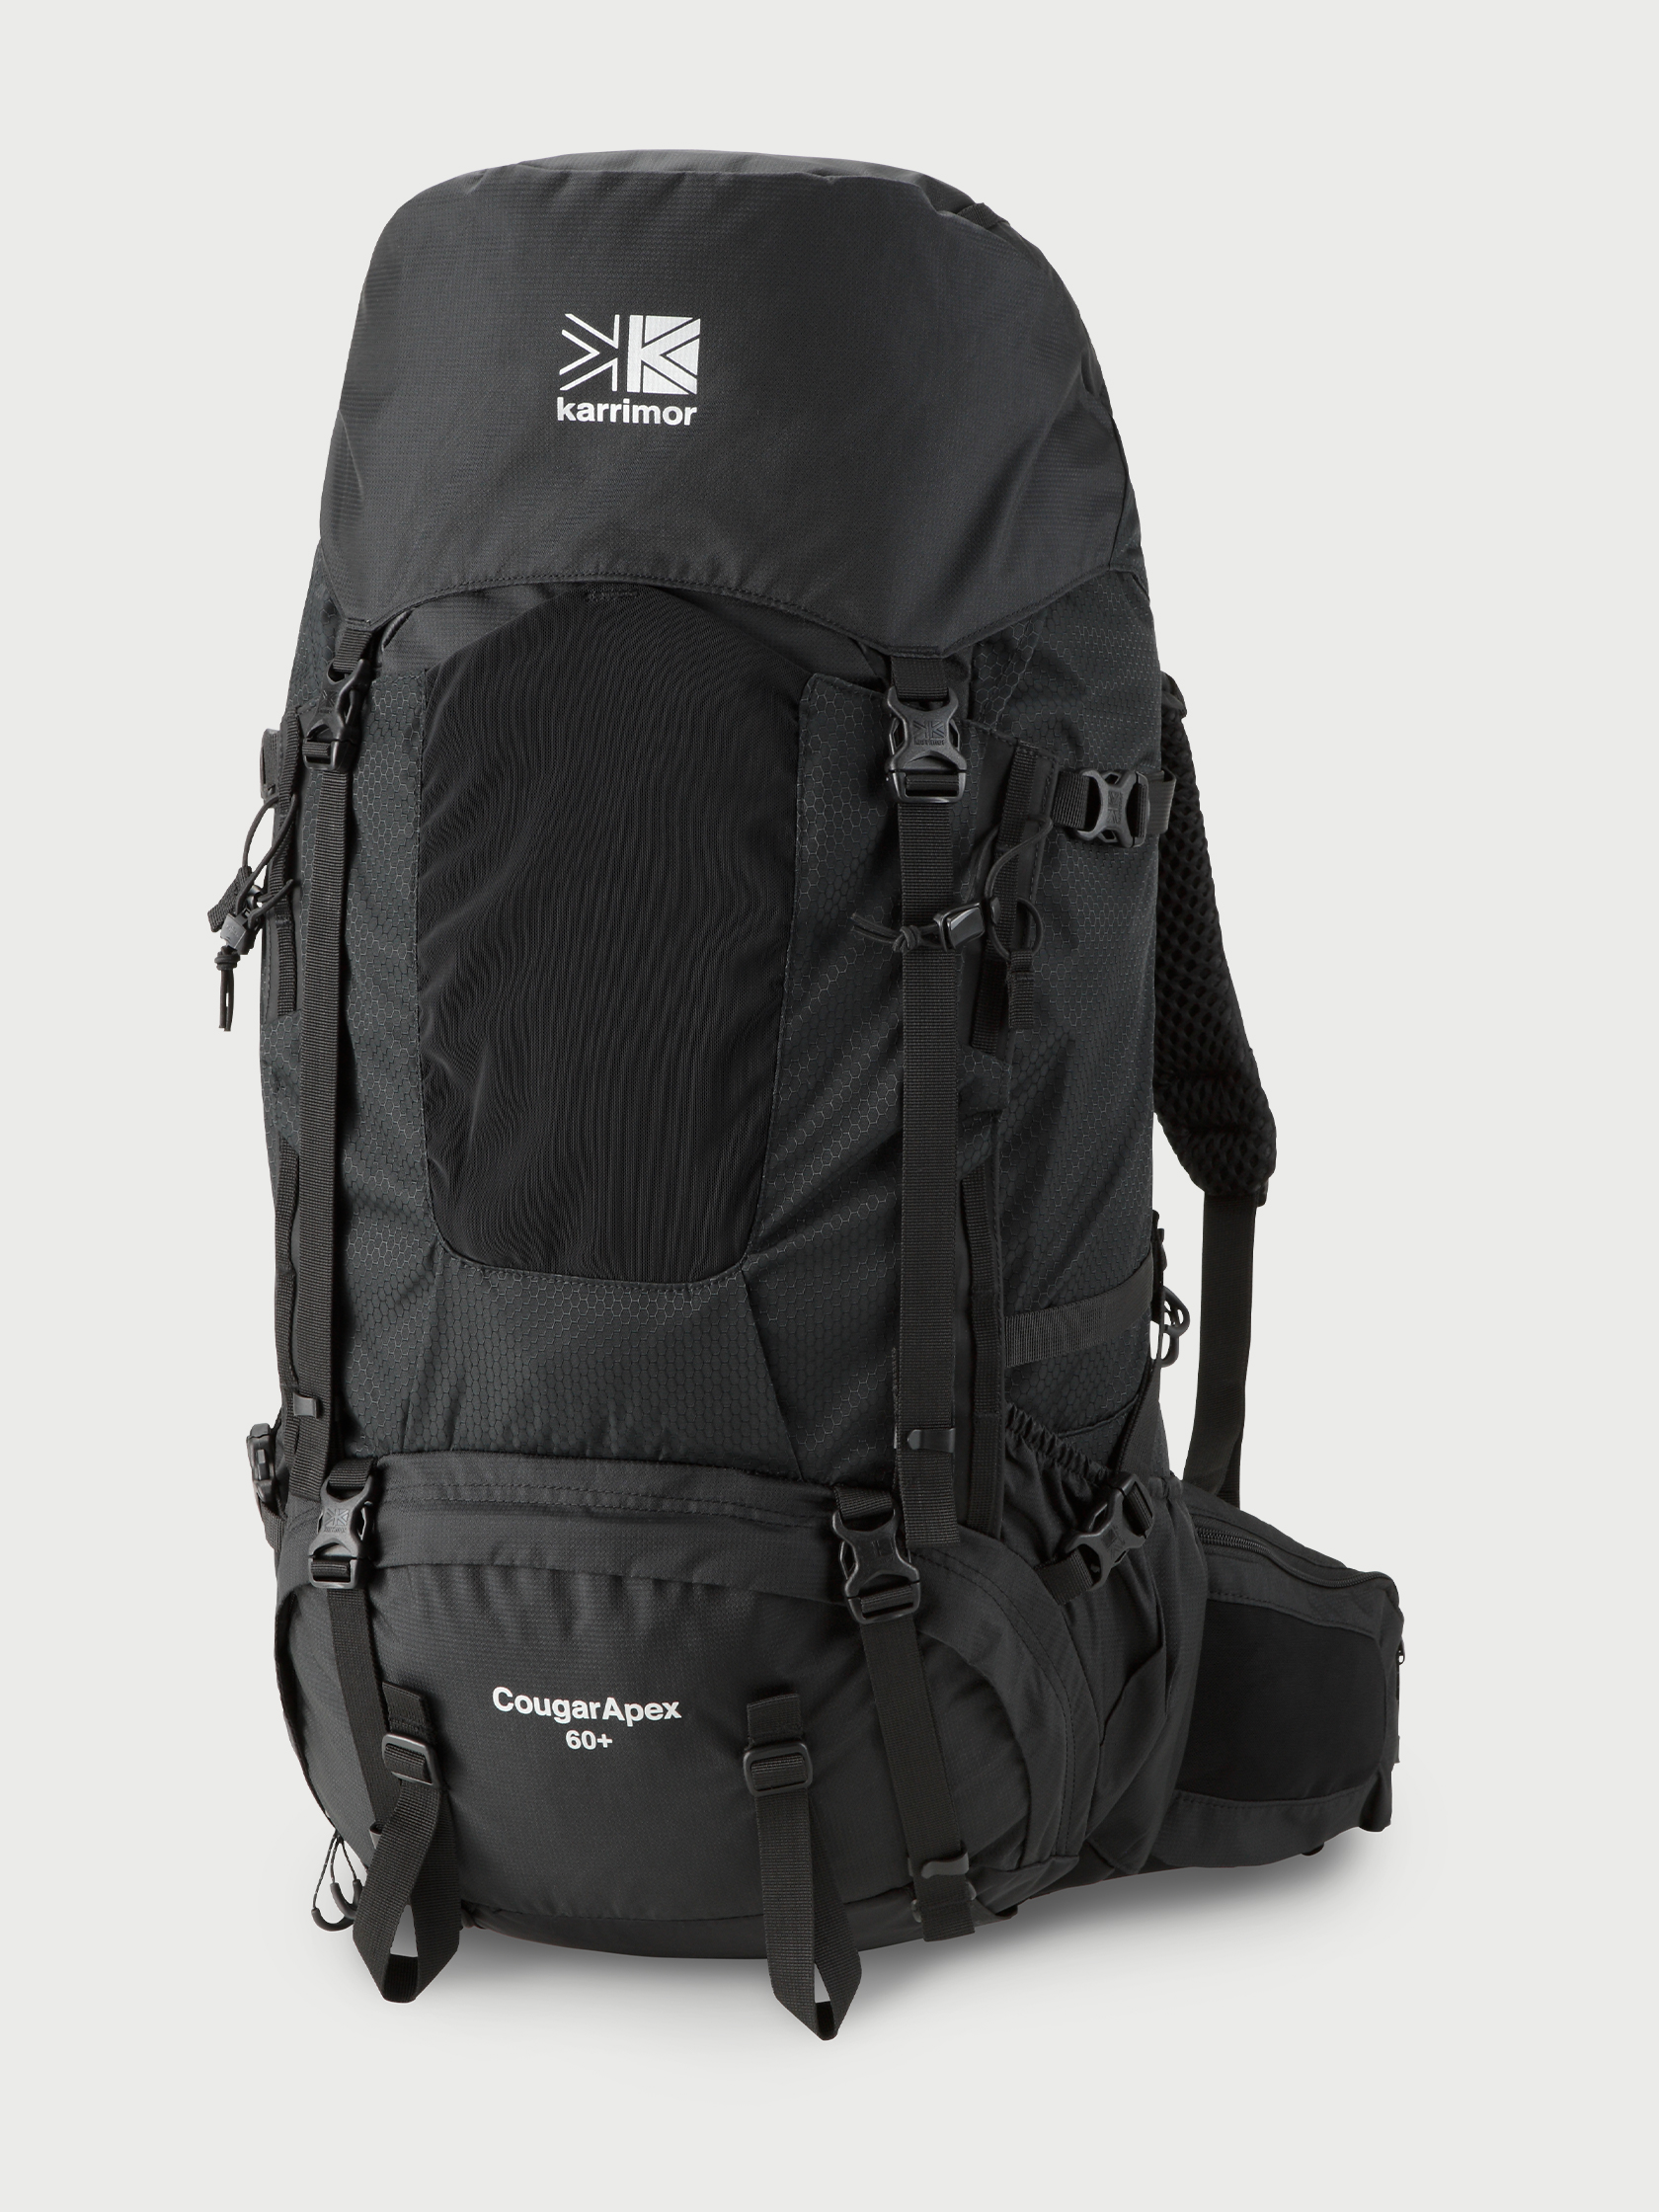 カリマー 登山用リュックサック 大型 CougarApex 60+ Black(ブラック 